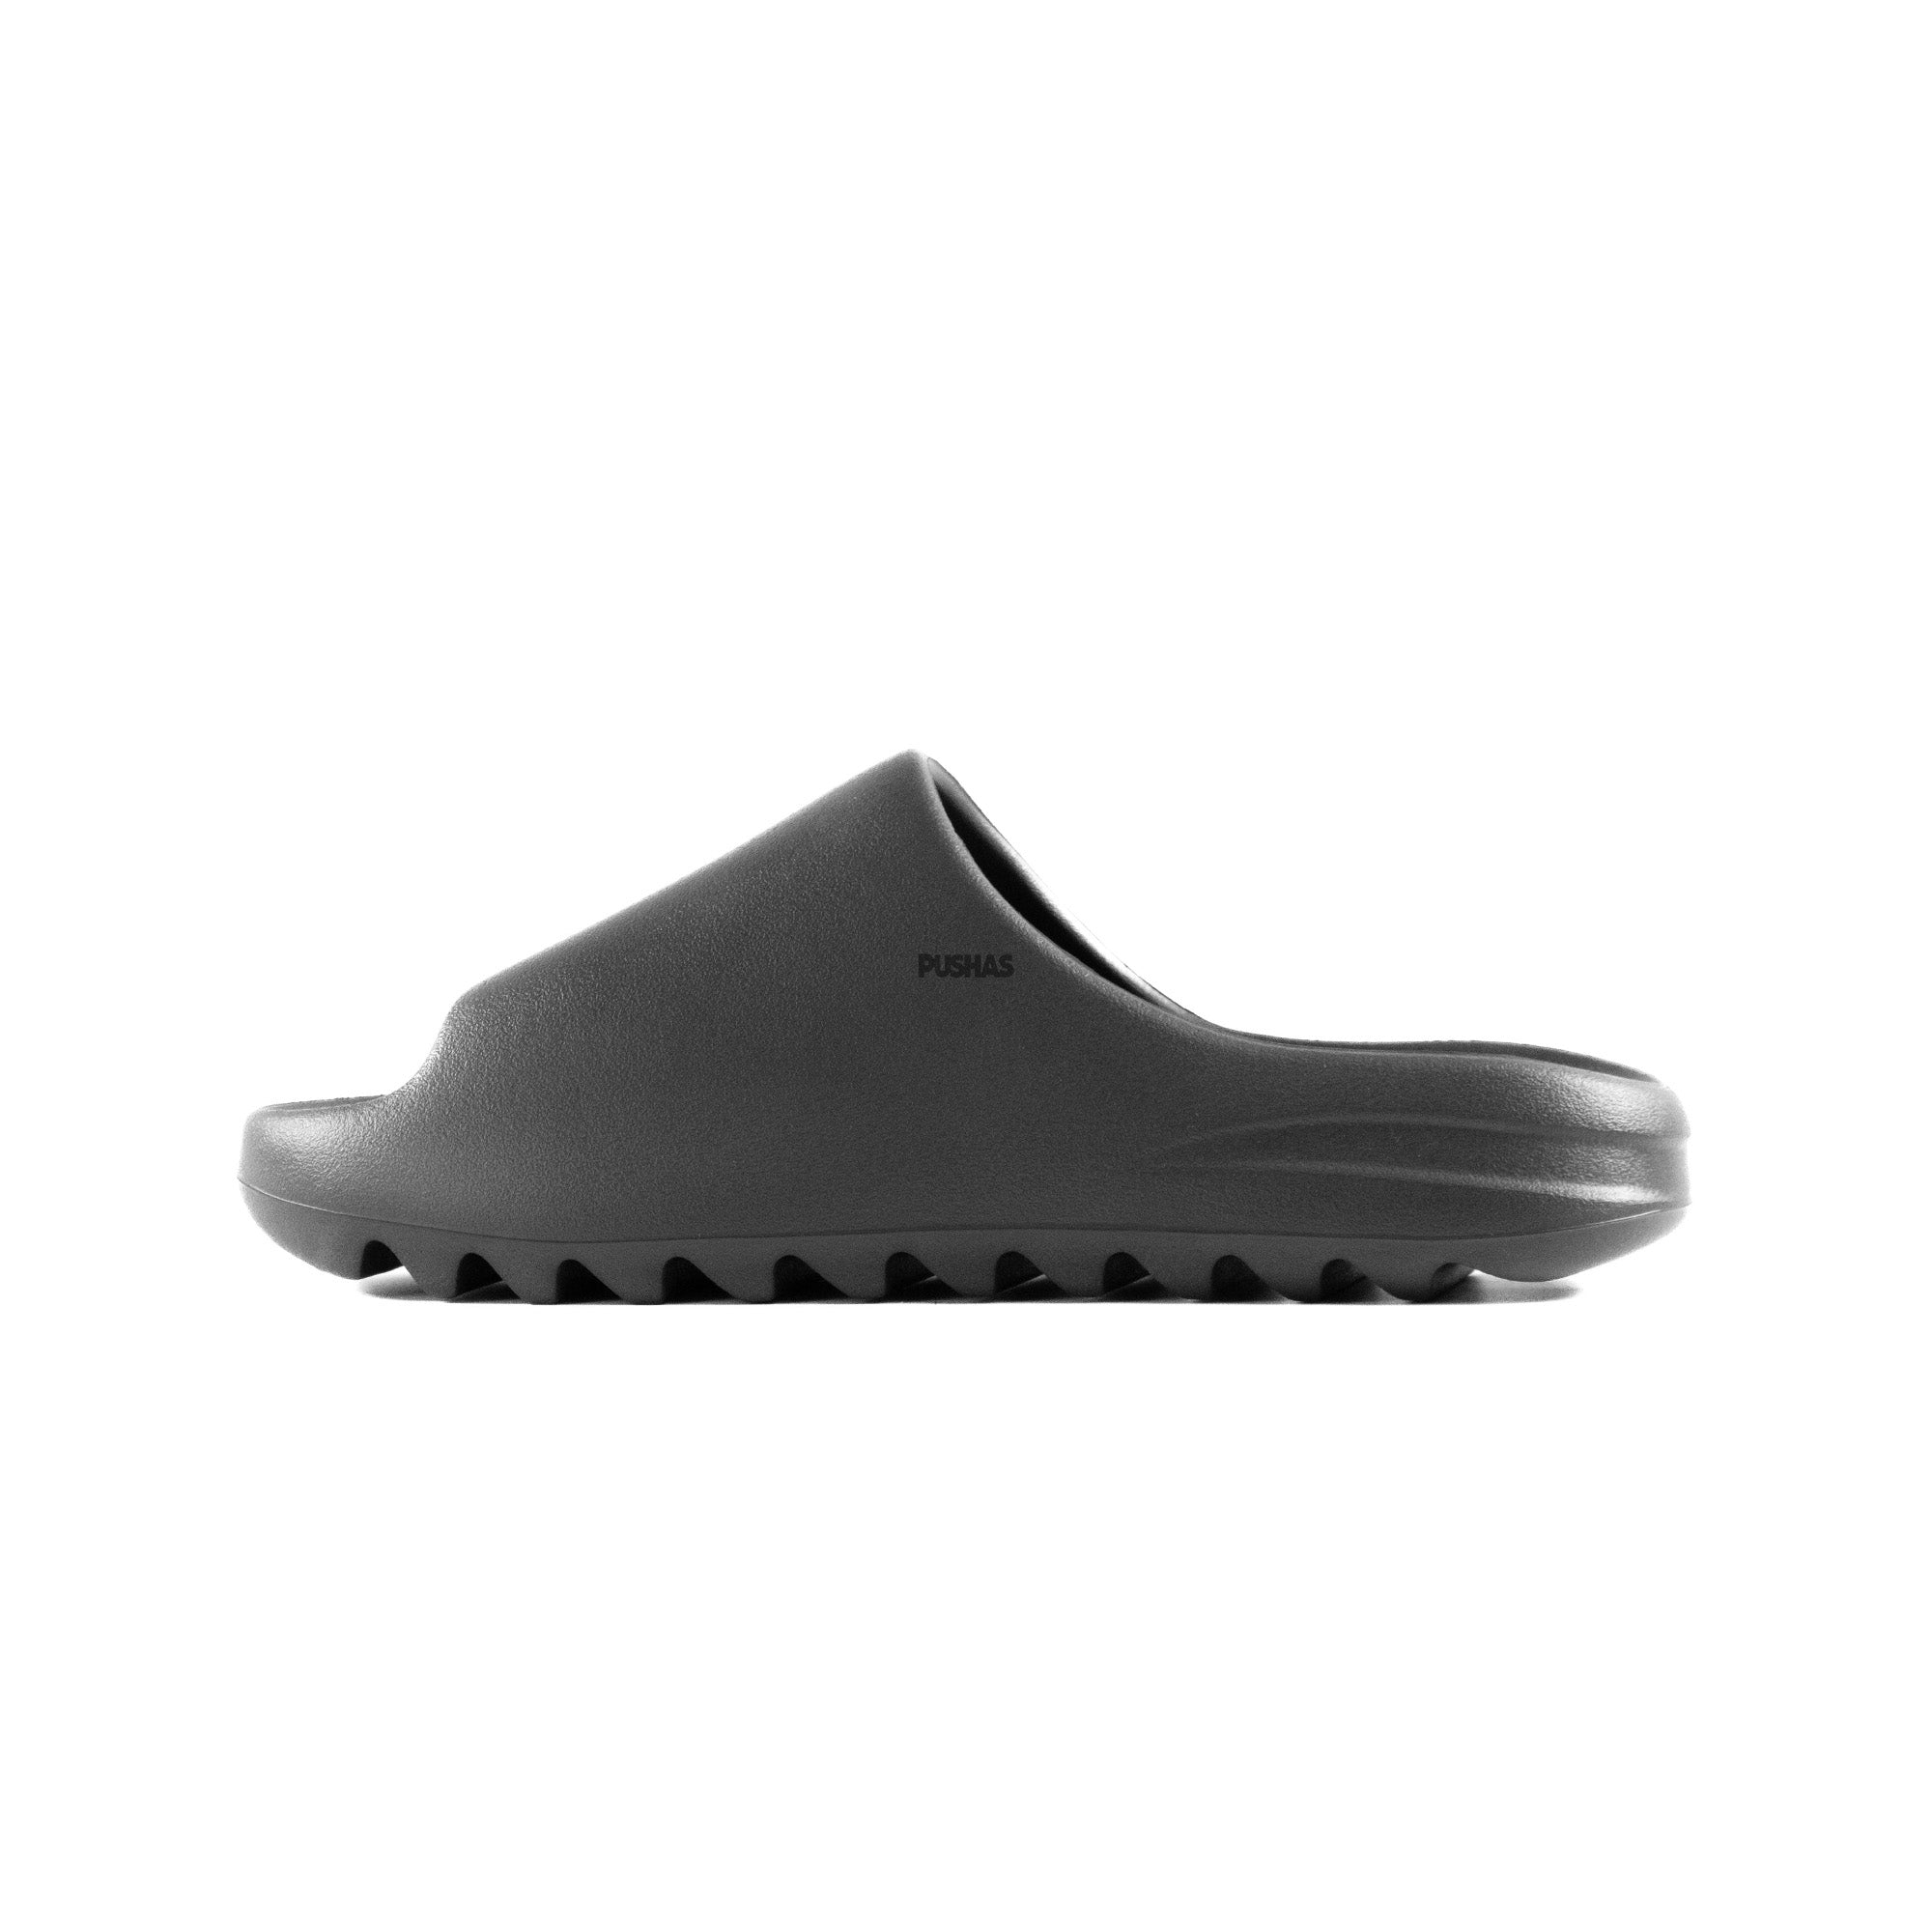 Buy Adidas Yeezy Slide 'Granite' – PUSHAS